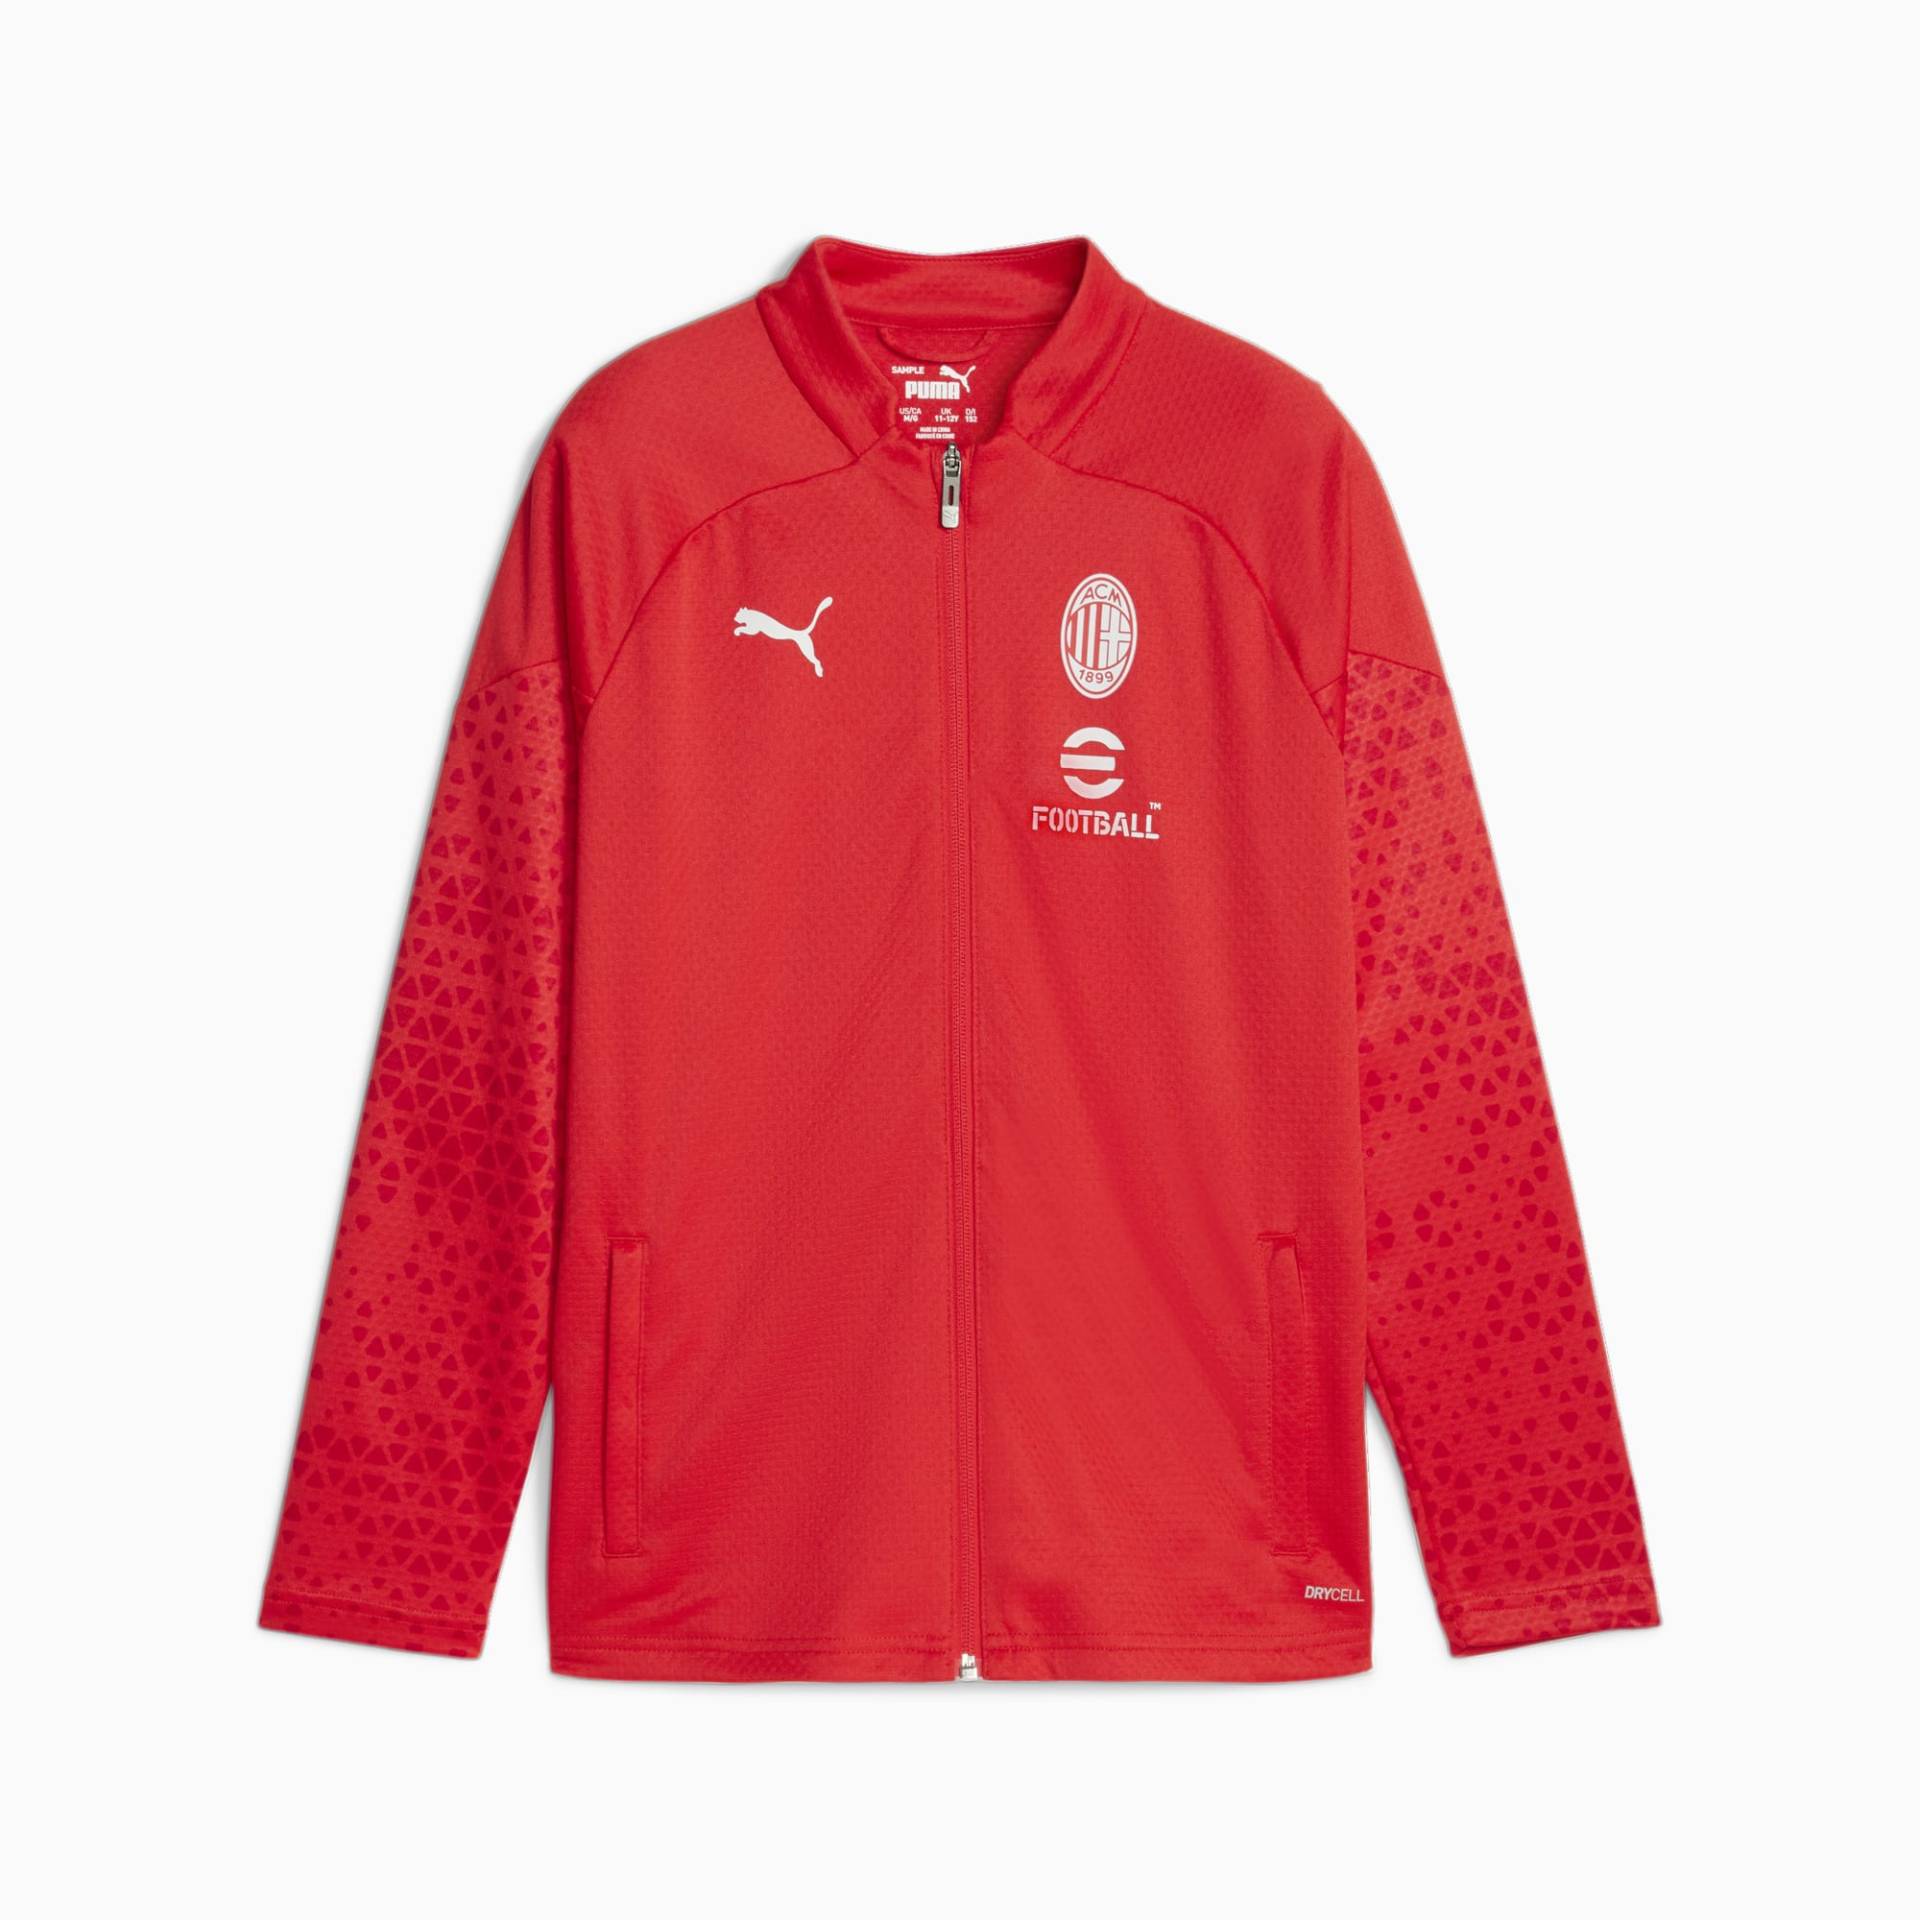 PUMA AC Milan Fußball-Trainingsjacke Teenager Für Kinder, Rot/Grau, Größe: 116, Accessoires von PUMA